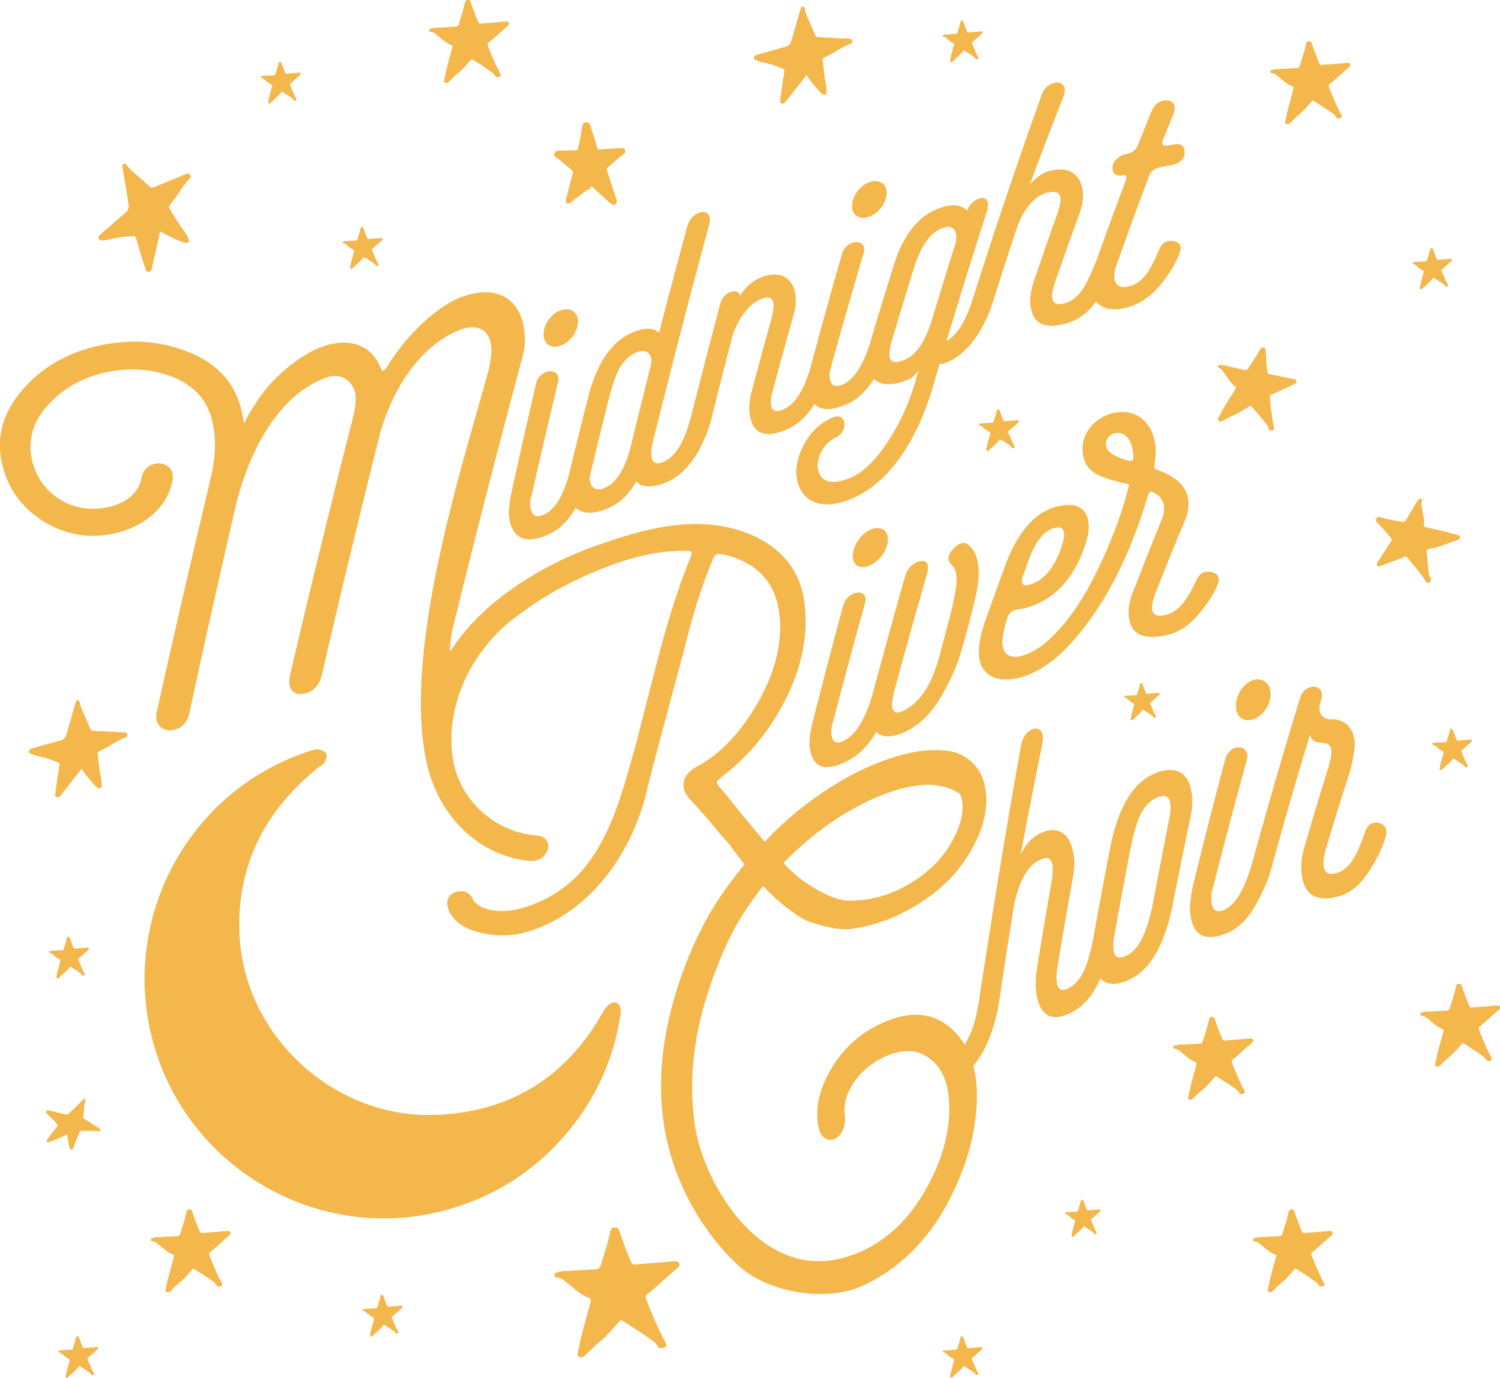 Midnight River Choir